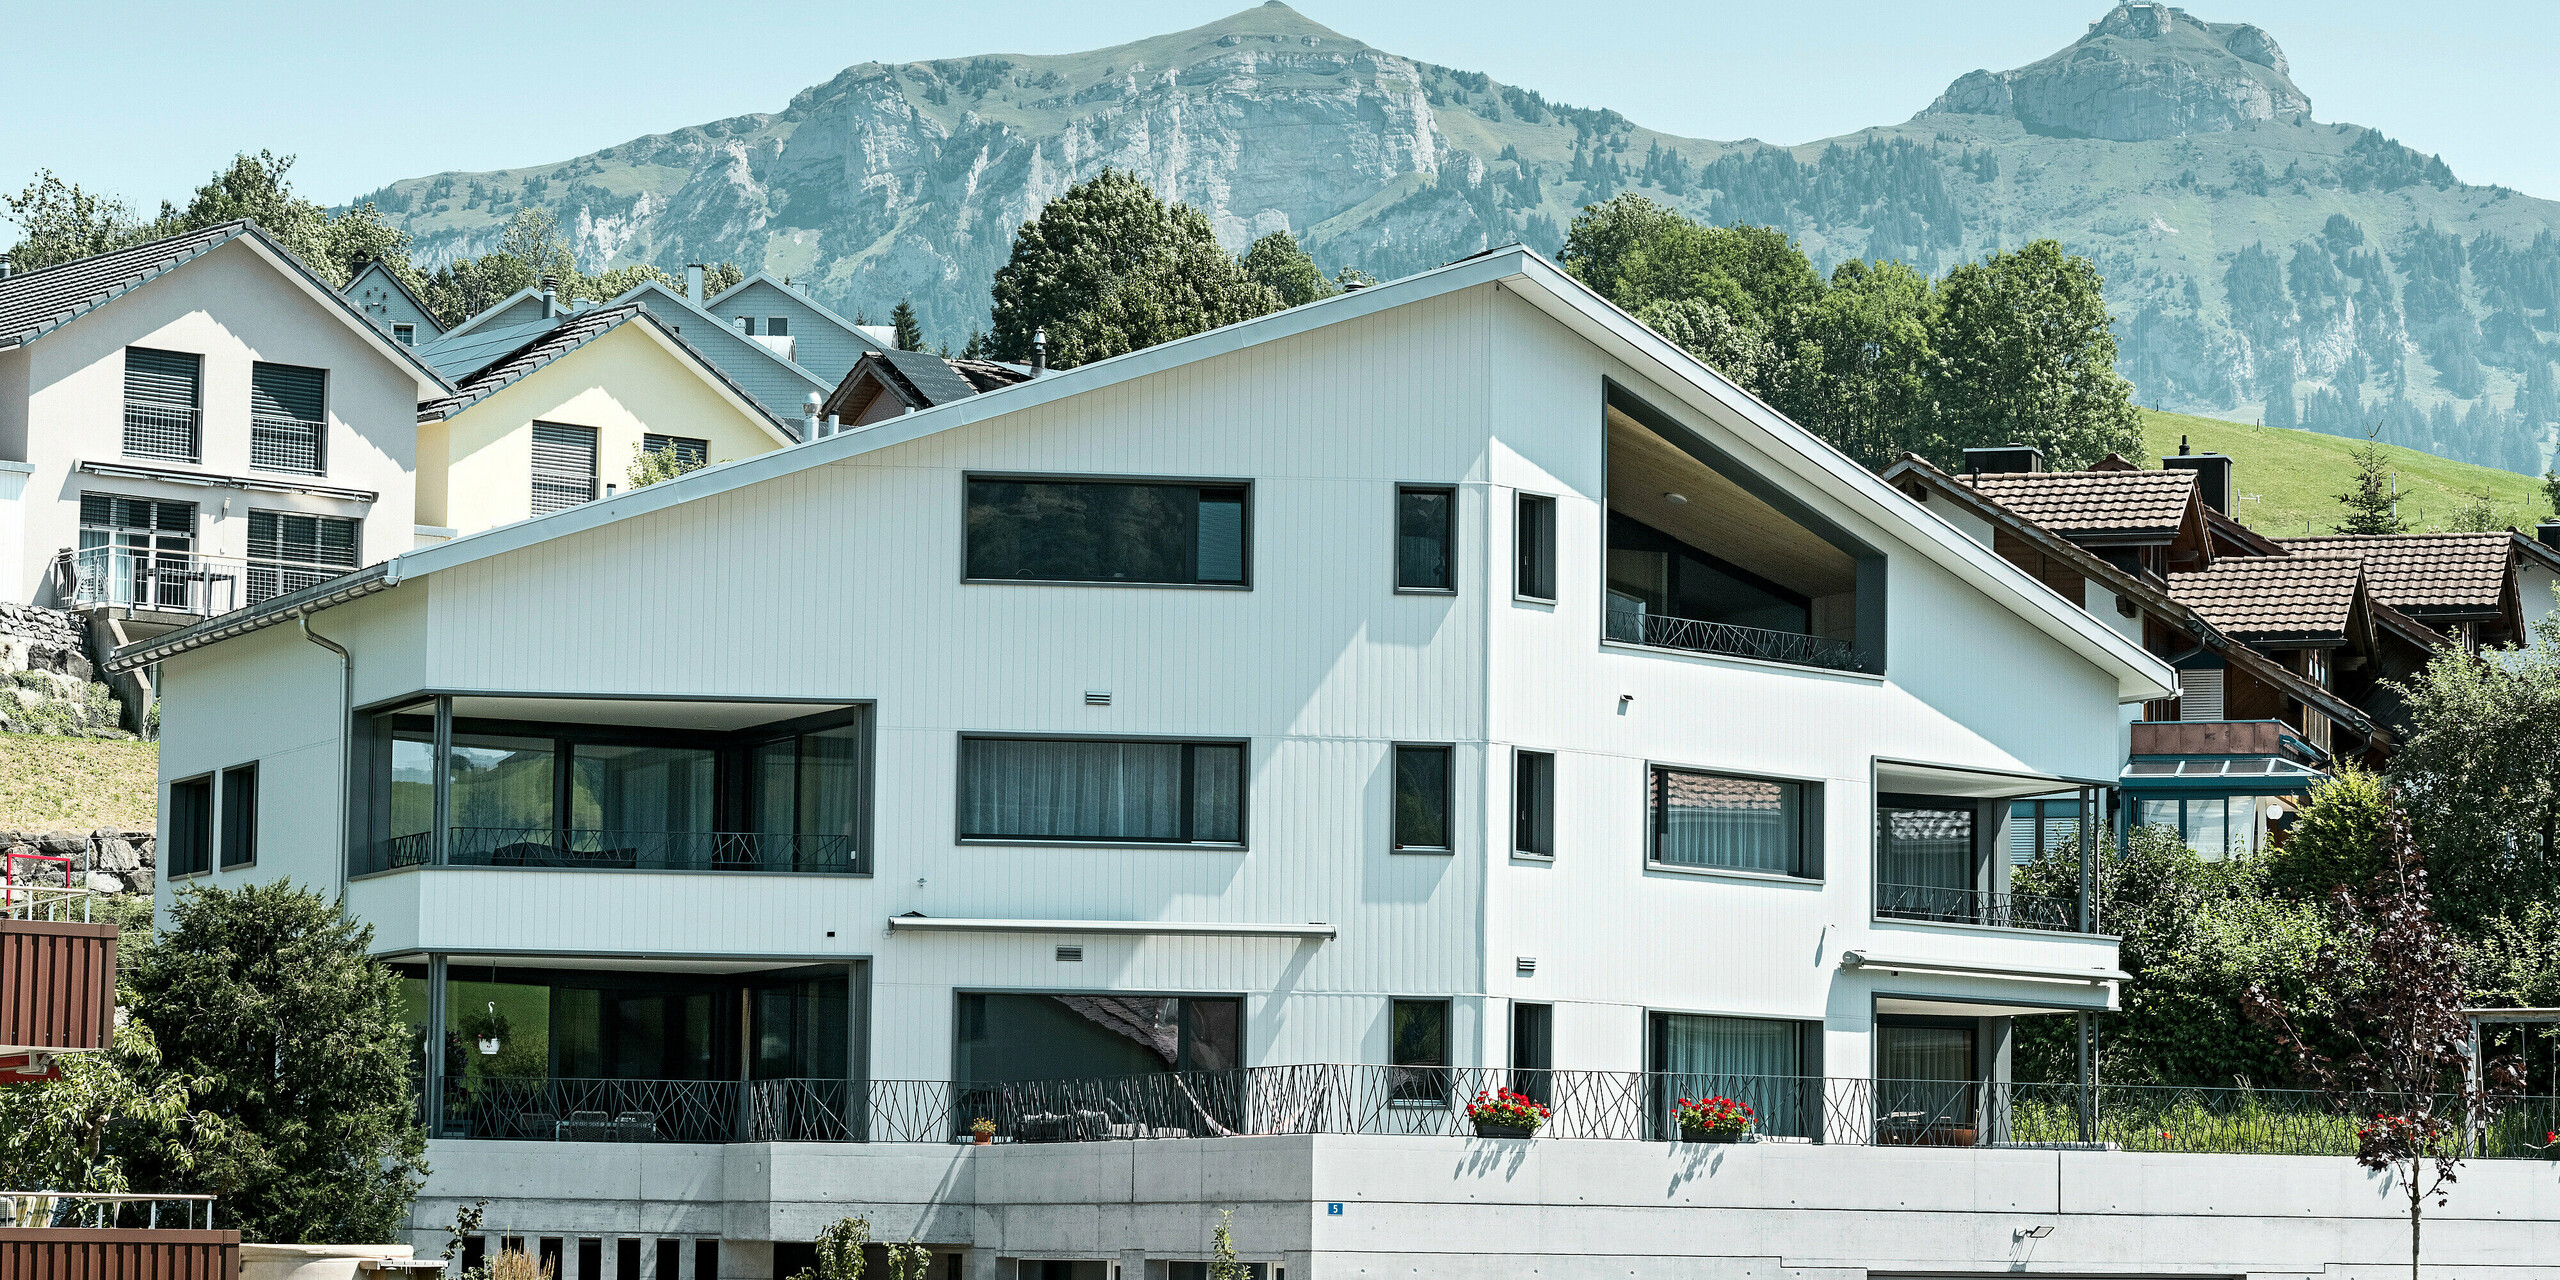 Sidings PREFA en gris pierre P.10 et blanc Prefa P.10 sur les façades de deux immeubles d'habitation voisins à Weissbad, en Suisse.